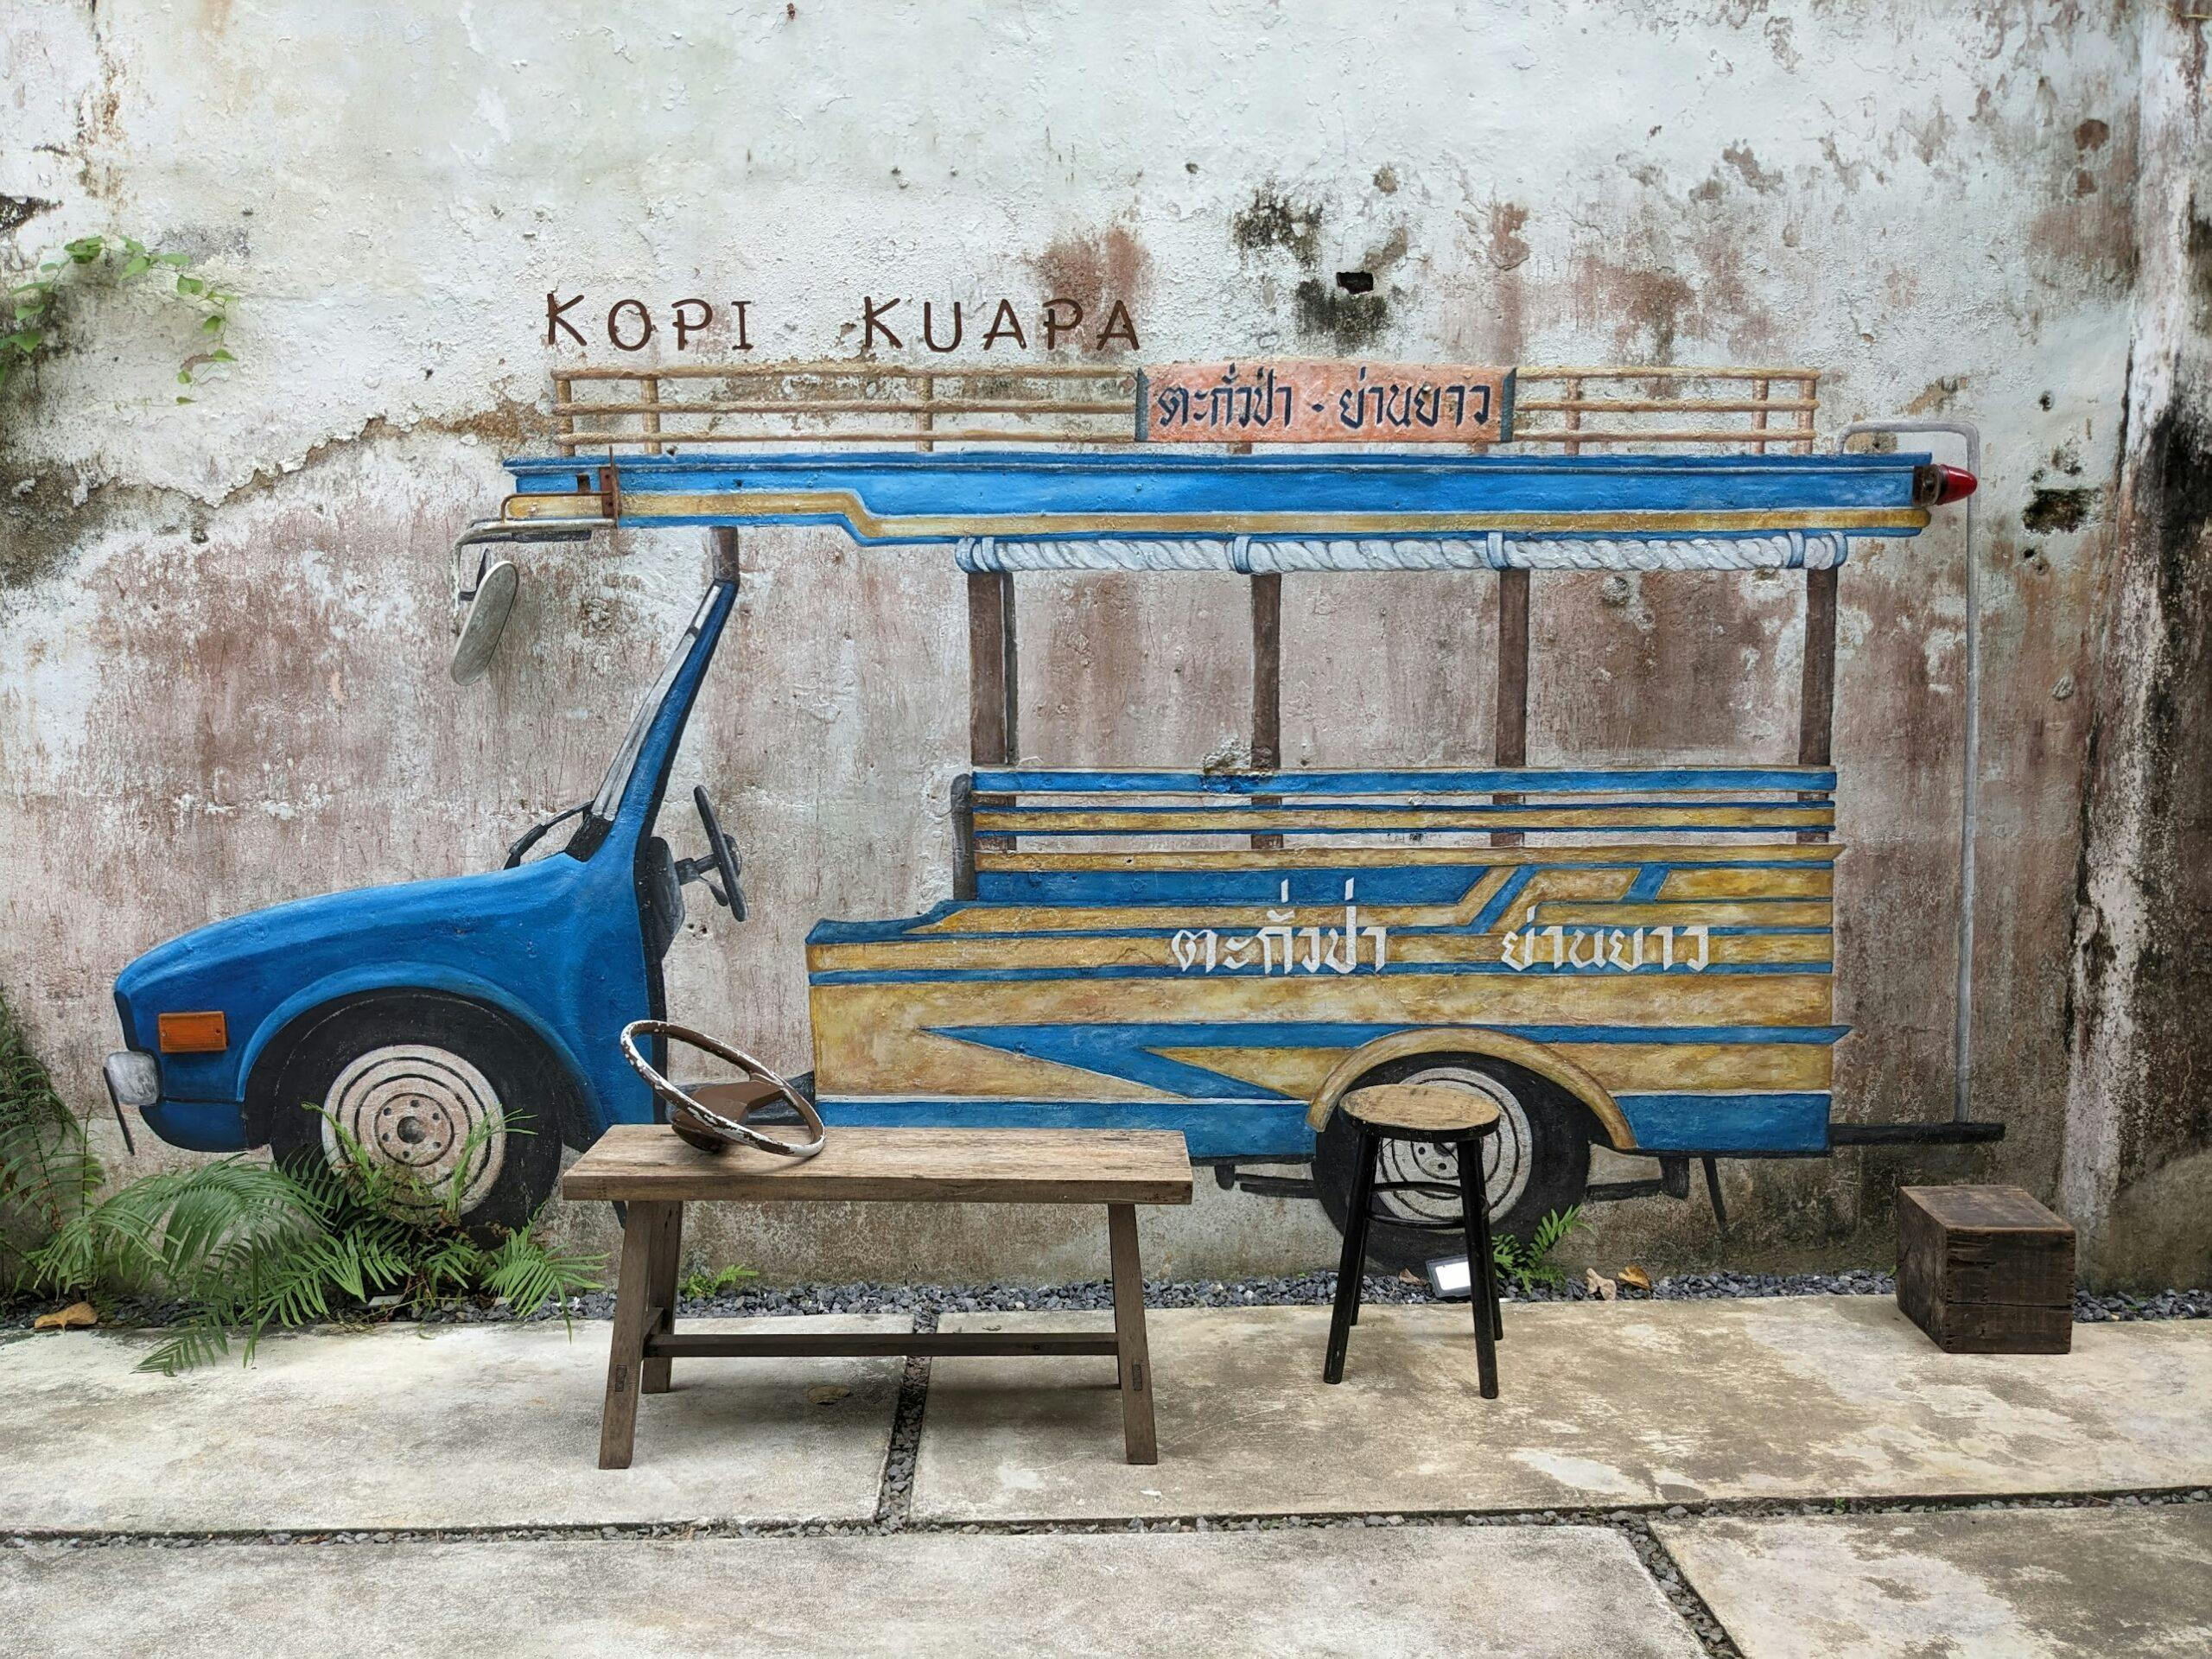 Rysunek samochodu na ścianie budynku w Ta Kuapa.